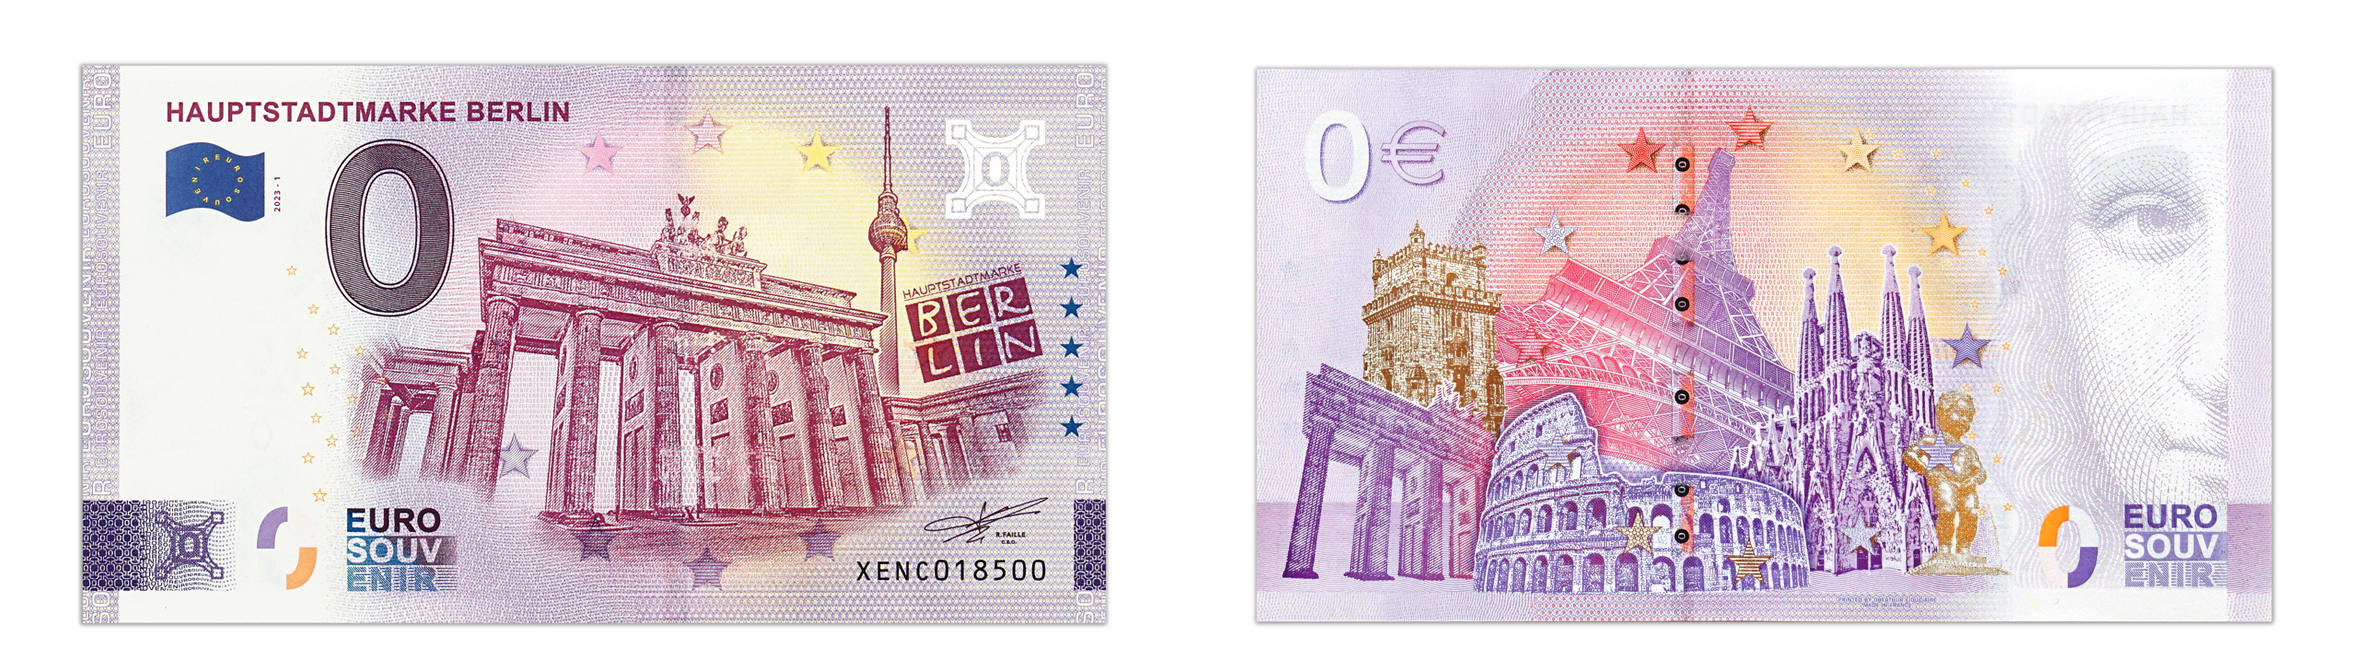 0 Euroschein Hauptstadtmarke BERLIN